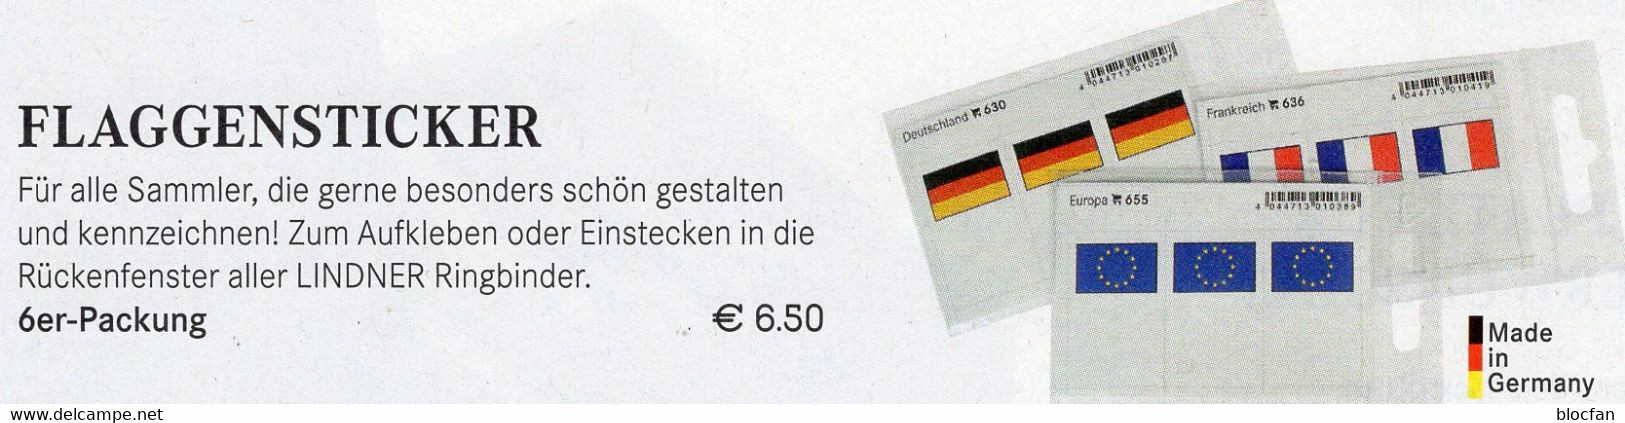 Farbe 3x2 Flaggen-Sticker Variabel 6-Pack 7€ Zur Kennzeichnung Von Alben+Sammlungen Firma LINDNER #600 Flag Of The World - Pochettes